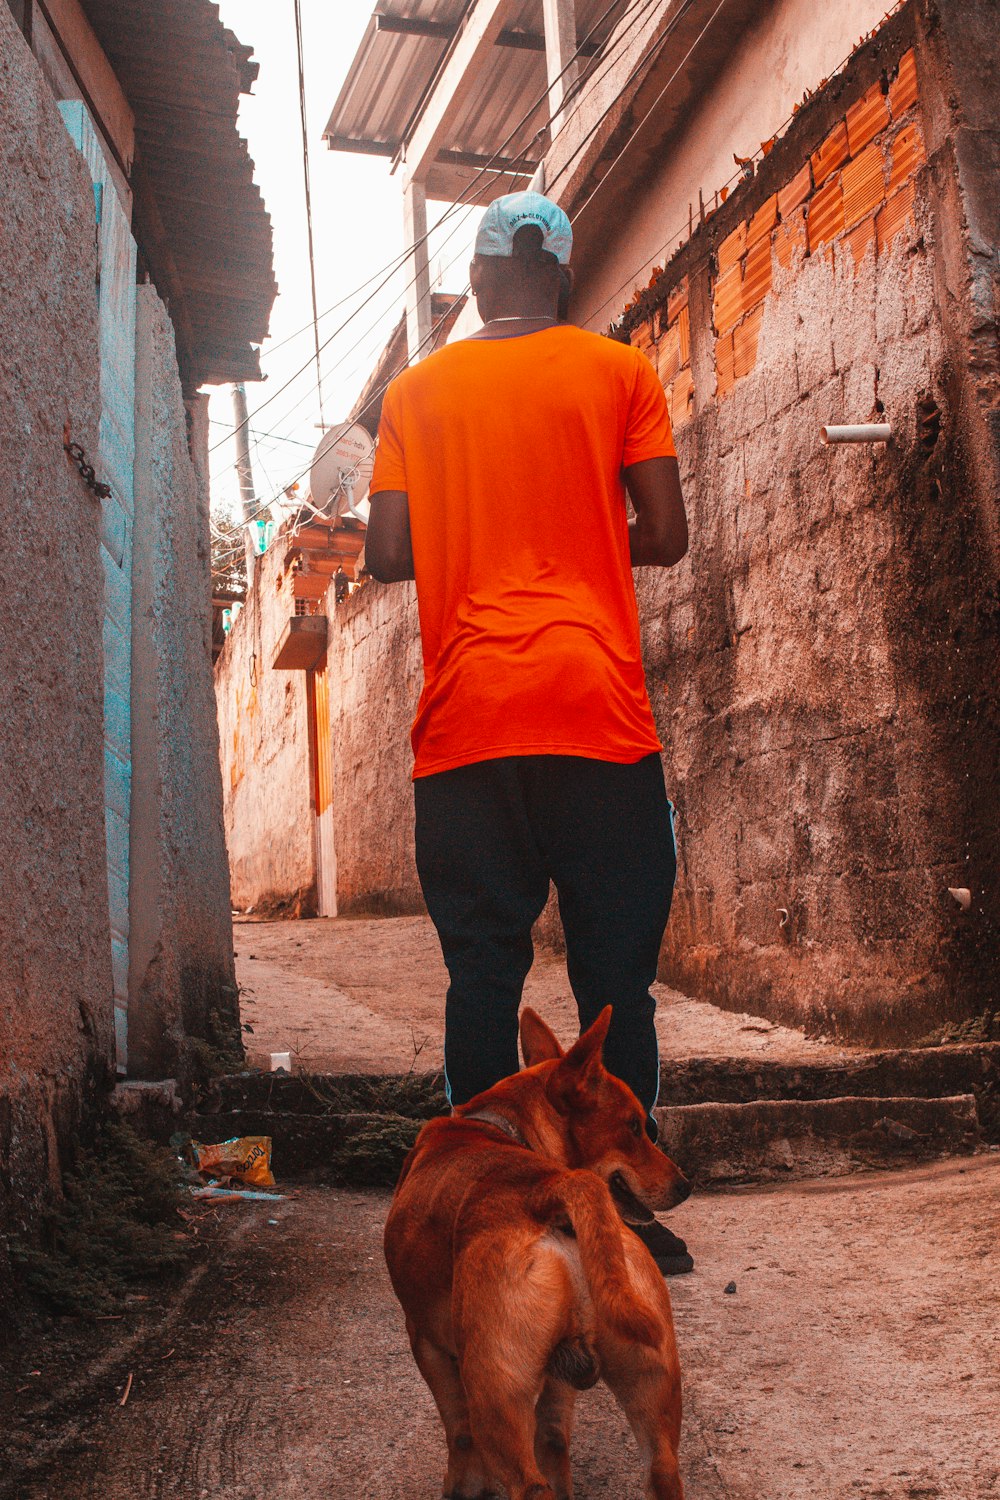 オレンジ色のクルーネックTシャツと黒いズボンを着た男が、茶色のショートコートの犬の横に立っている